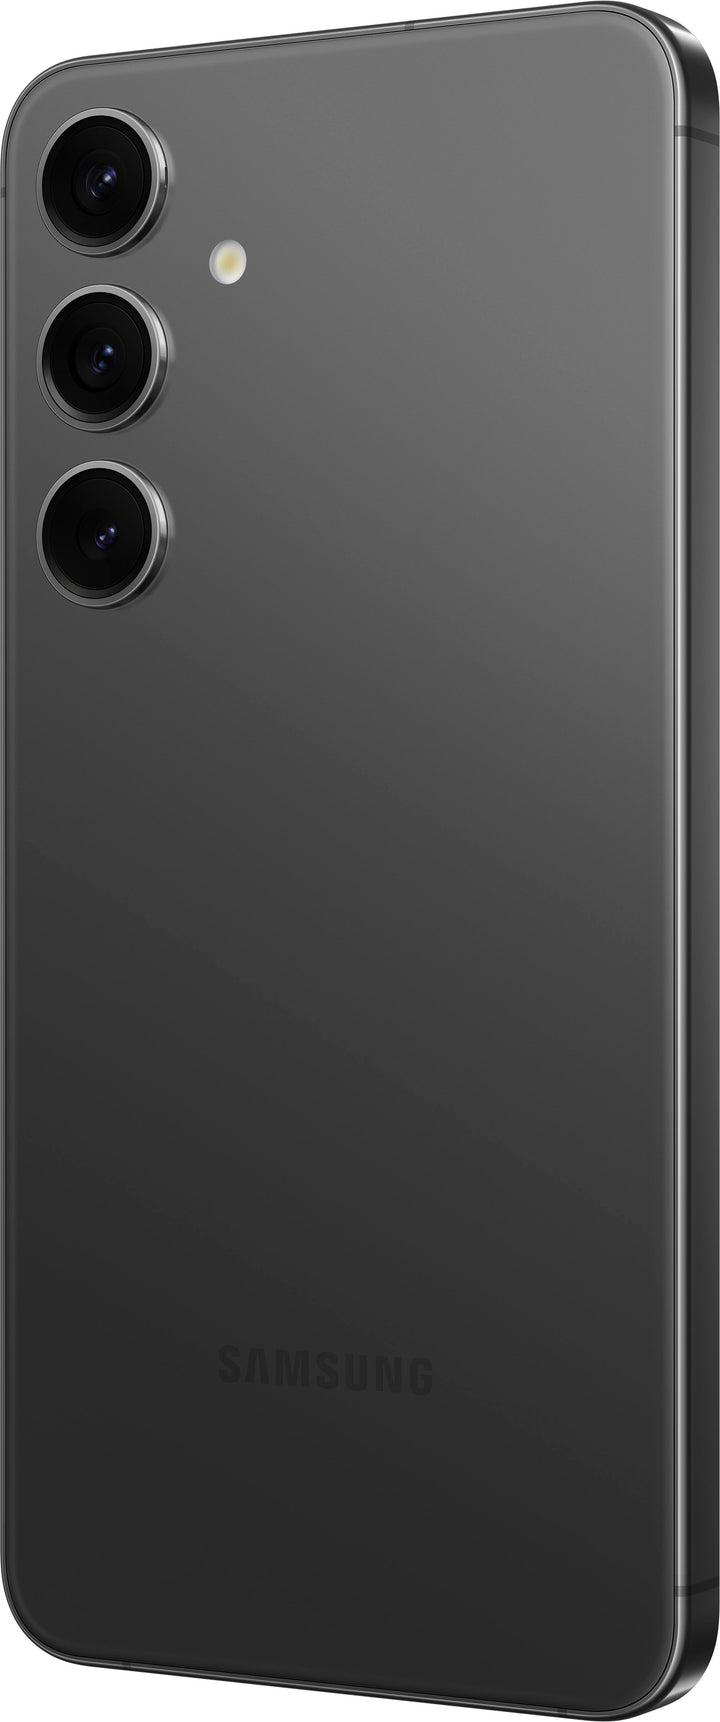 Samsung - Galaxy S24+ 256GB - Onyx Black (Verizon)_5